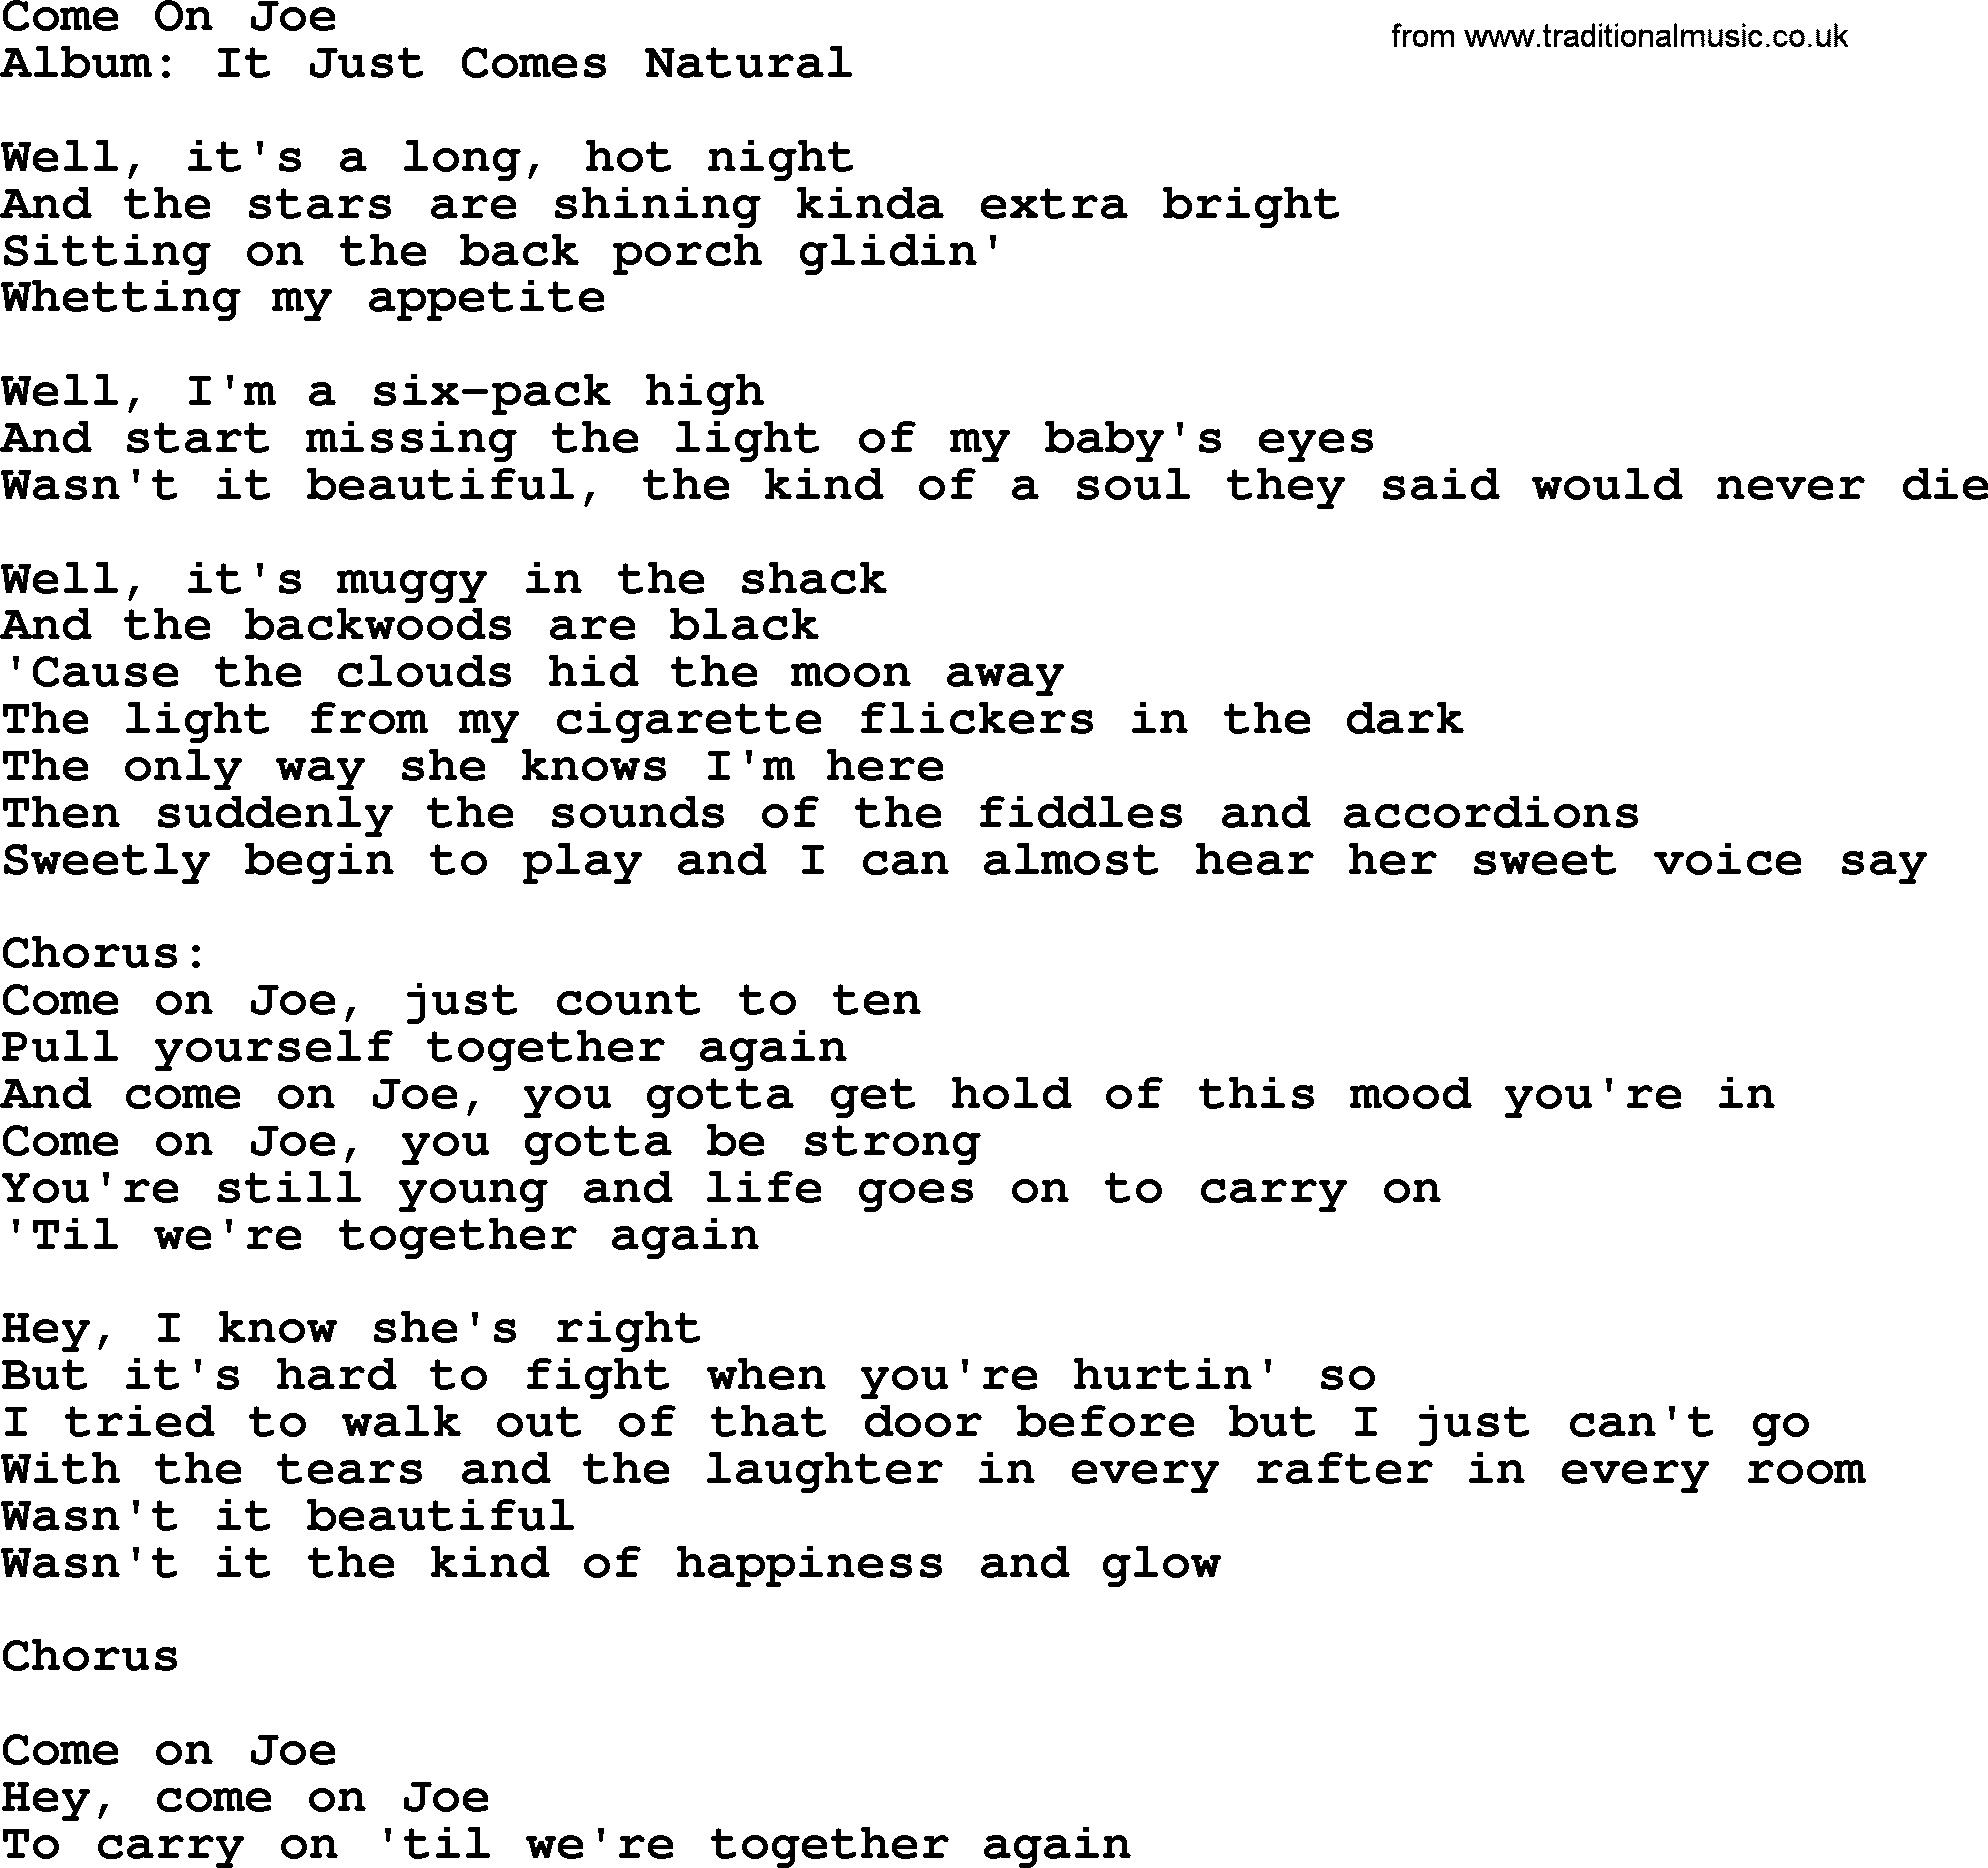 Come On Joe By George Strait Lyrics